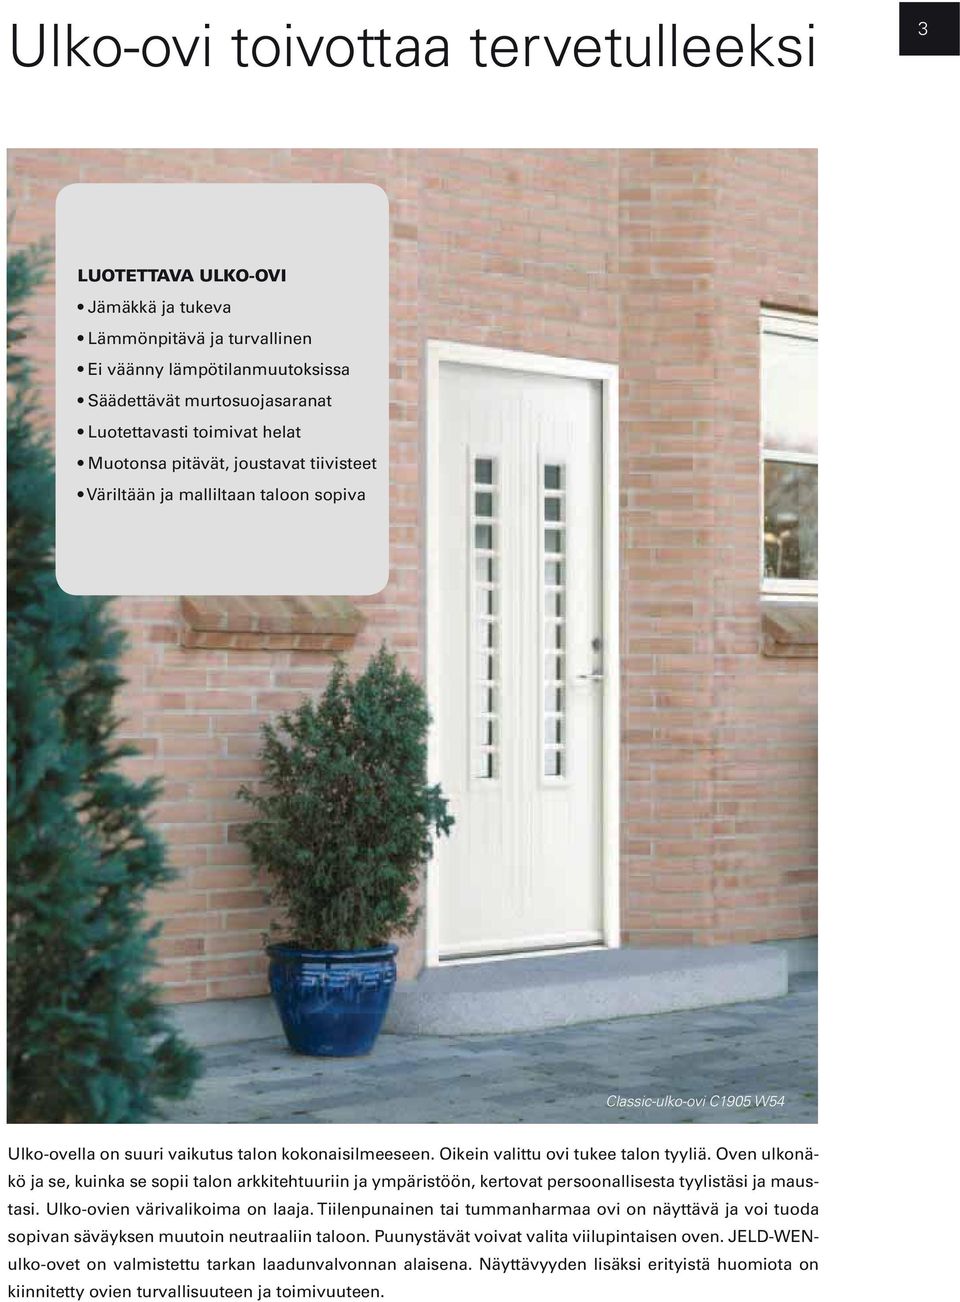 Ulko-ovien värivalikoima on laaja. Tiilenpunainen tai tummanharmaa ovi on näyttävä ja voi tuoda sopivan säväyksen muutoin neutraaliin taloon.